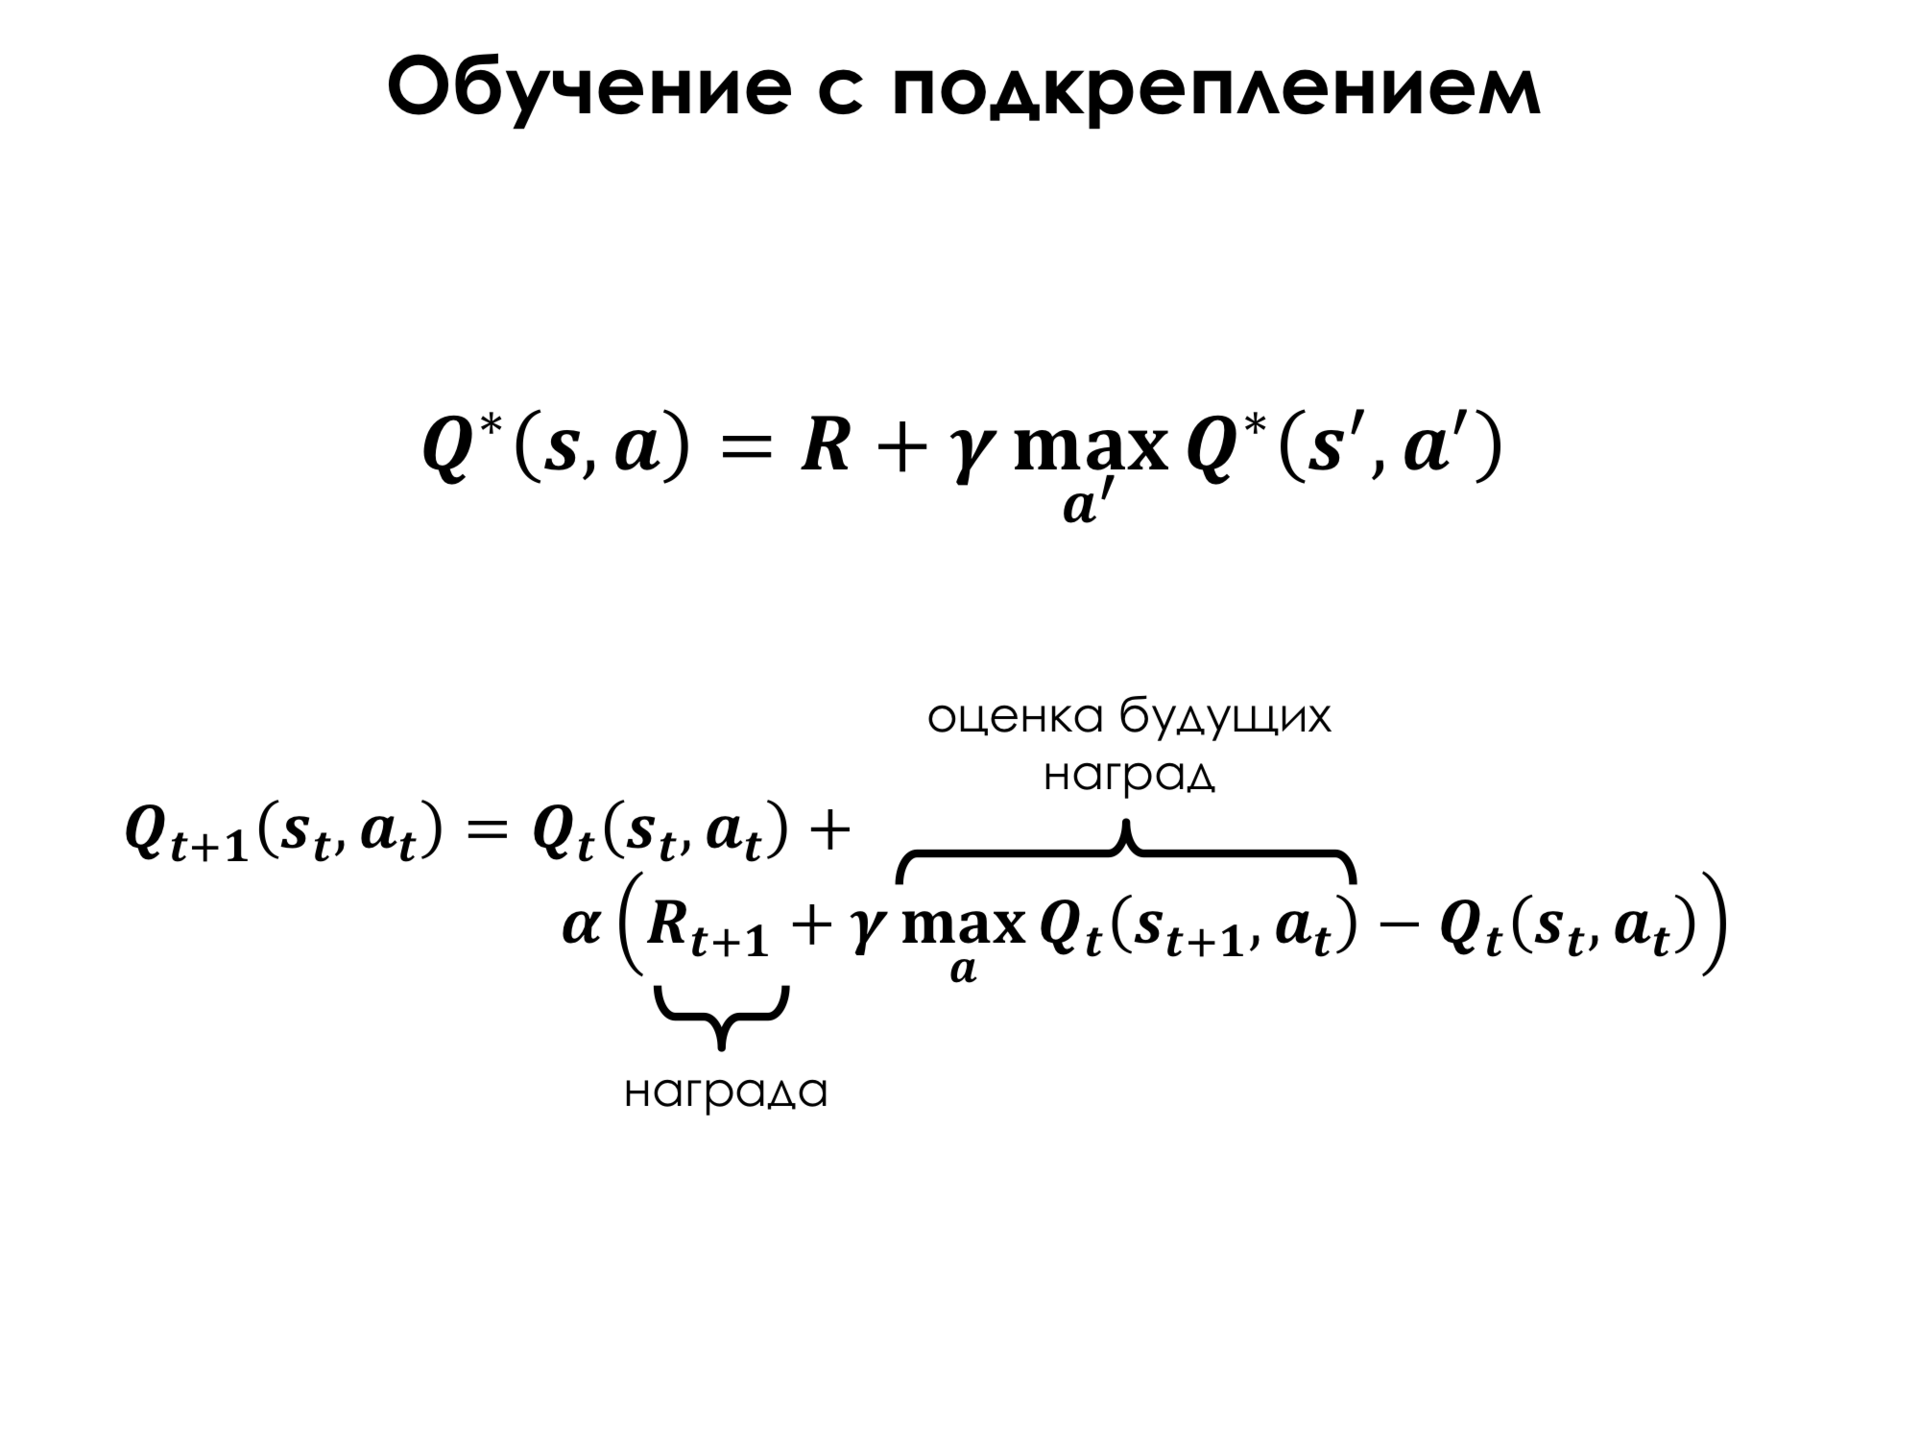 Самое главное о нейронных сетях. Лекция в Яндексе - 50